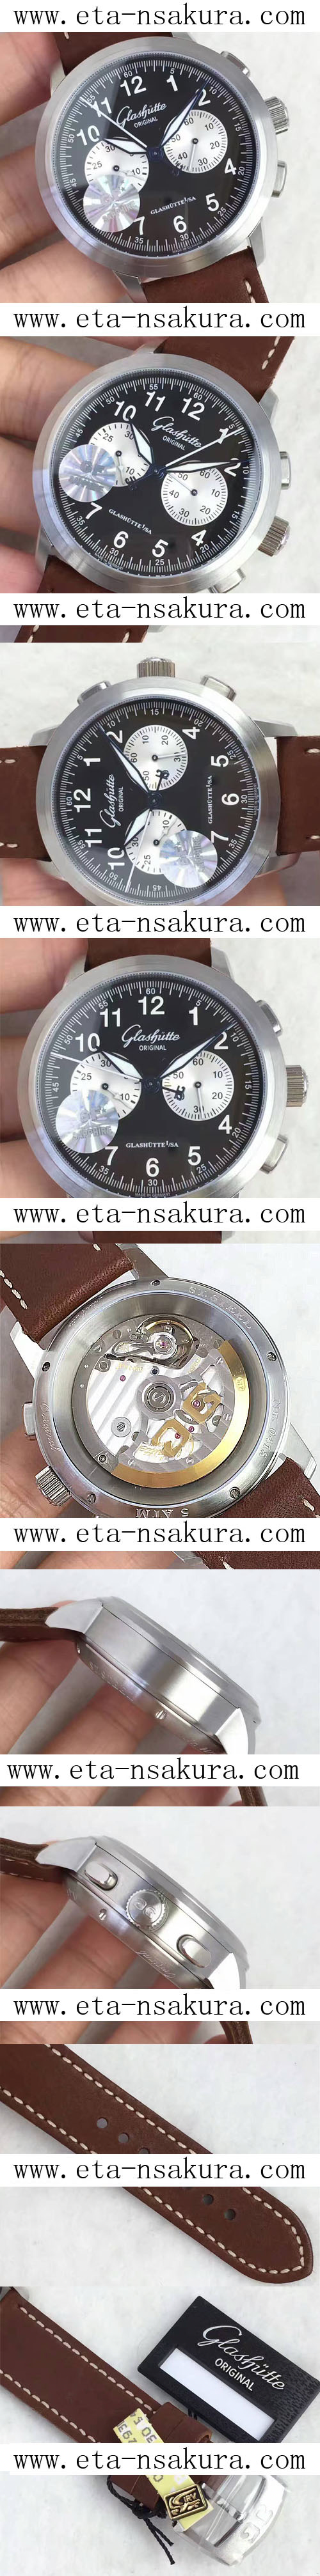 レプリカ時計カルティエ cal.39-31ムーブメント搭載 自動巻き ( GF工場製品） - ウインドウを閉じる